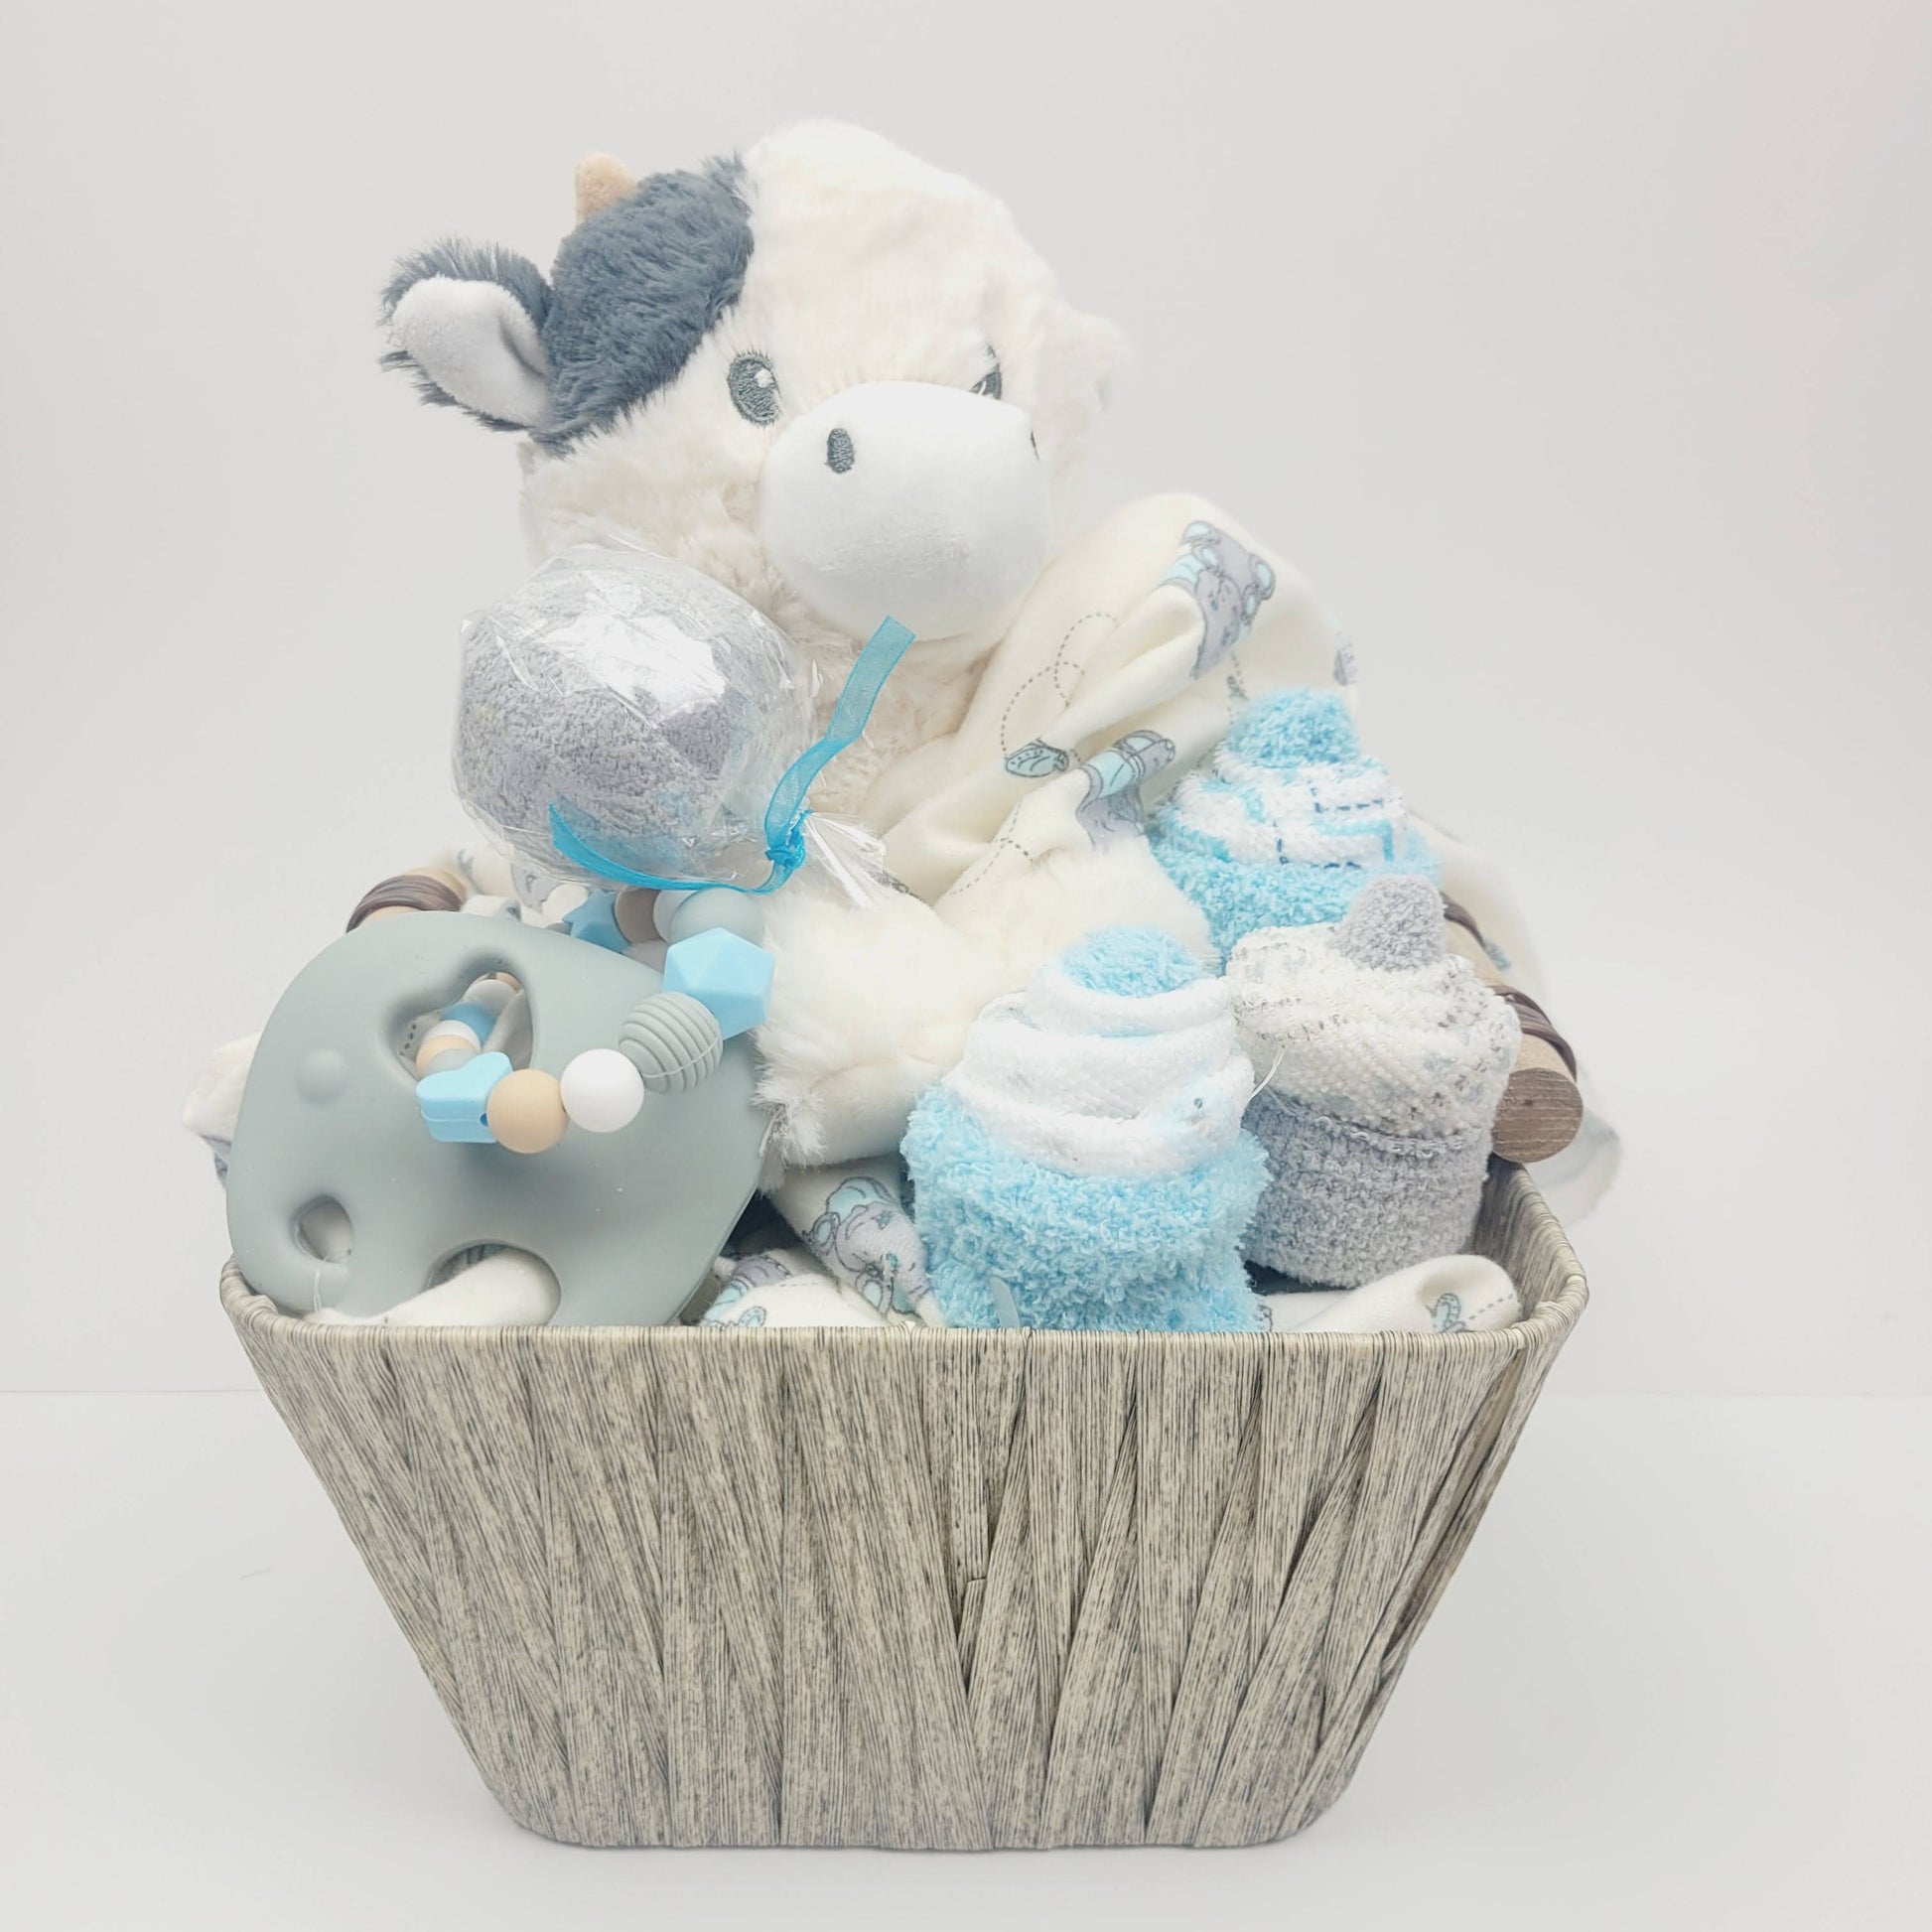 Ensemble cadeau pour babyshower, panier remplis de couverture avec éléphant gris et bleu, un toutou de vache, des cupecakes en débarbouillettes et un jouet de dentition en silicone avec un éléphant gris.